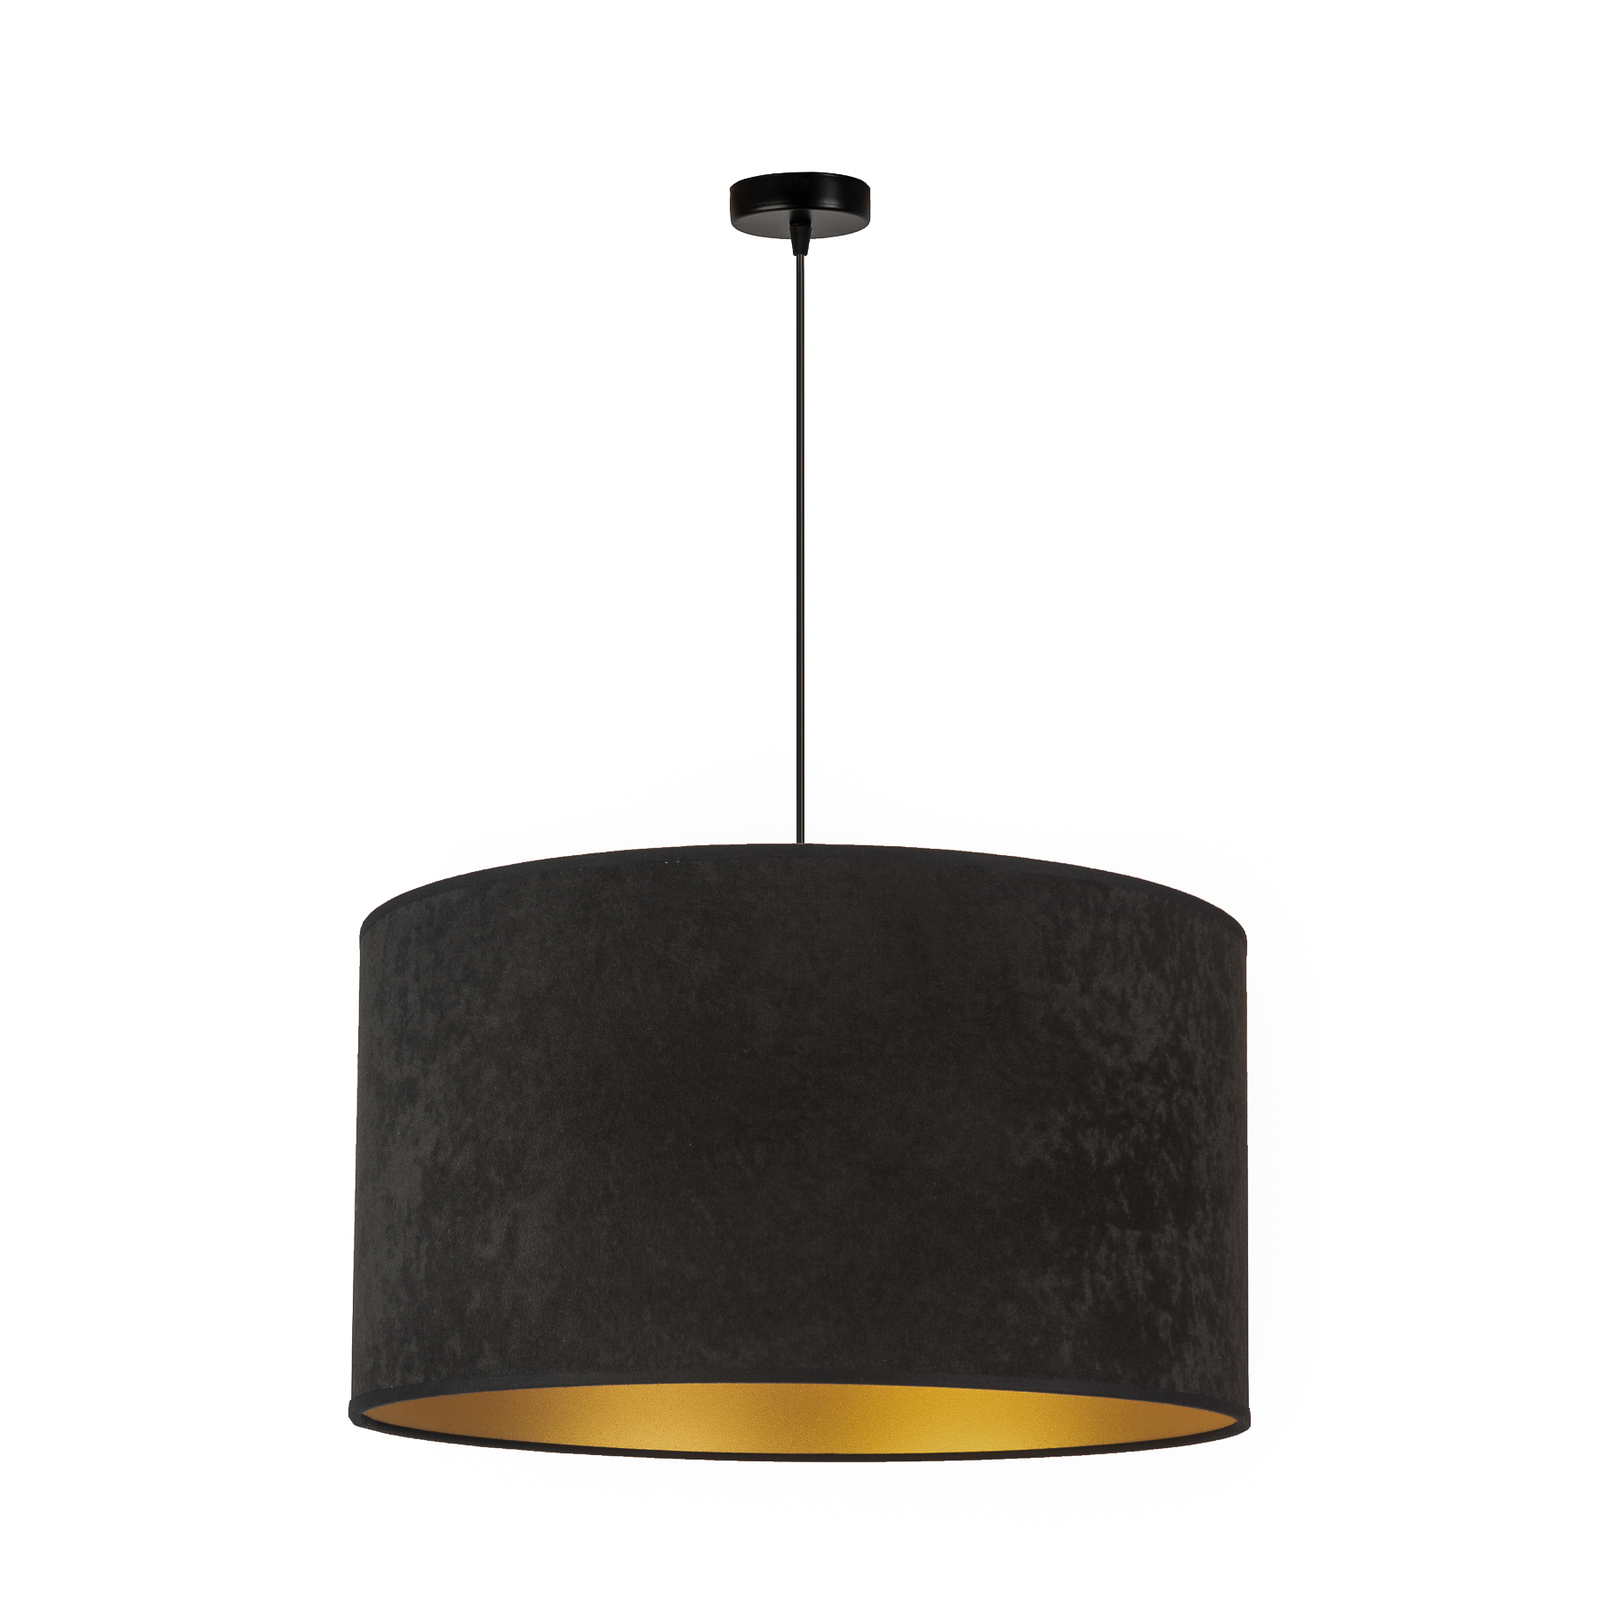 Hanglamp Golden Roller Ø 40 cm zwart/goud